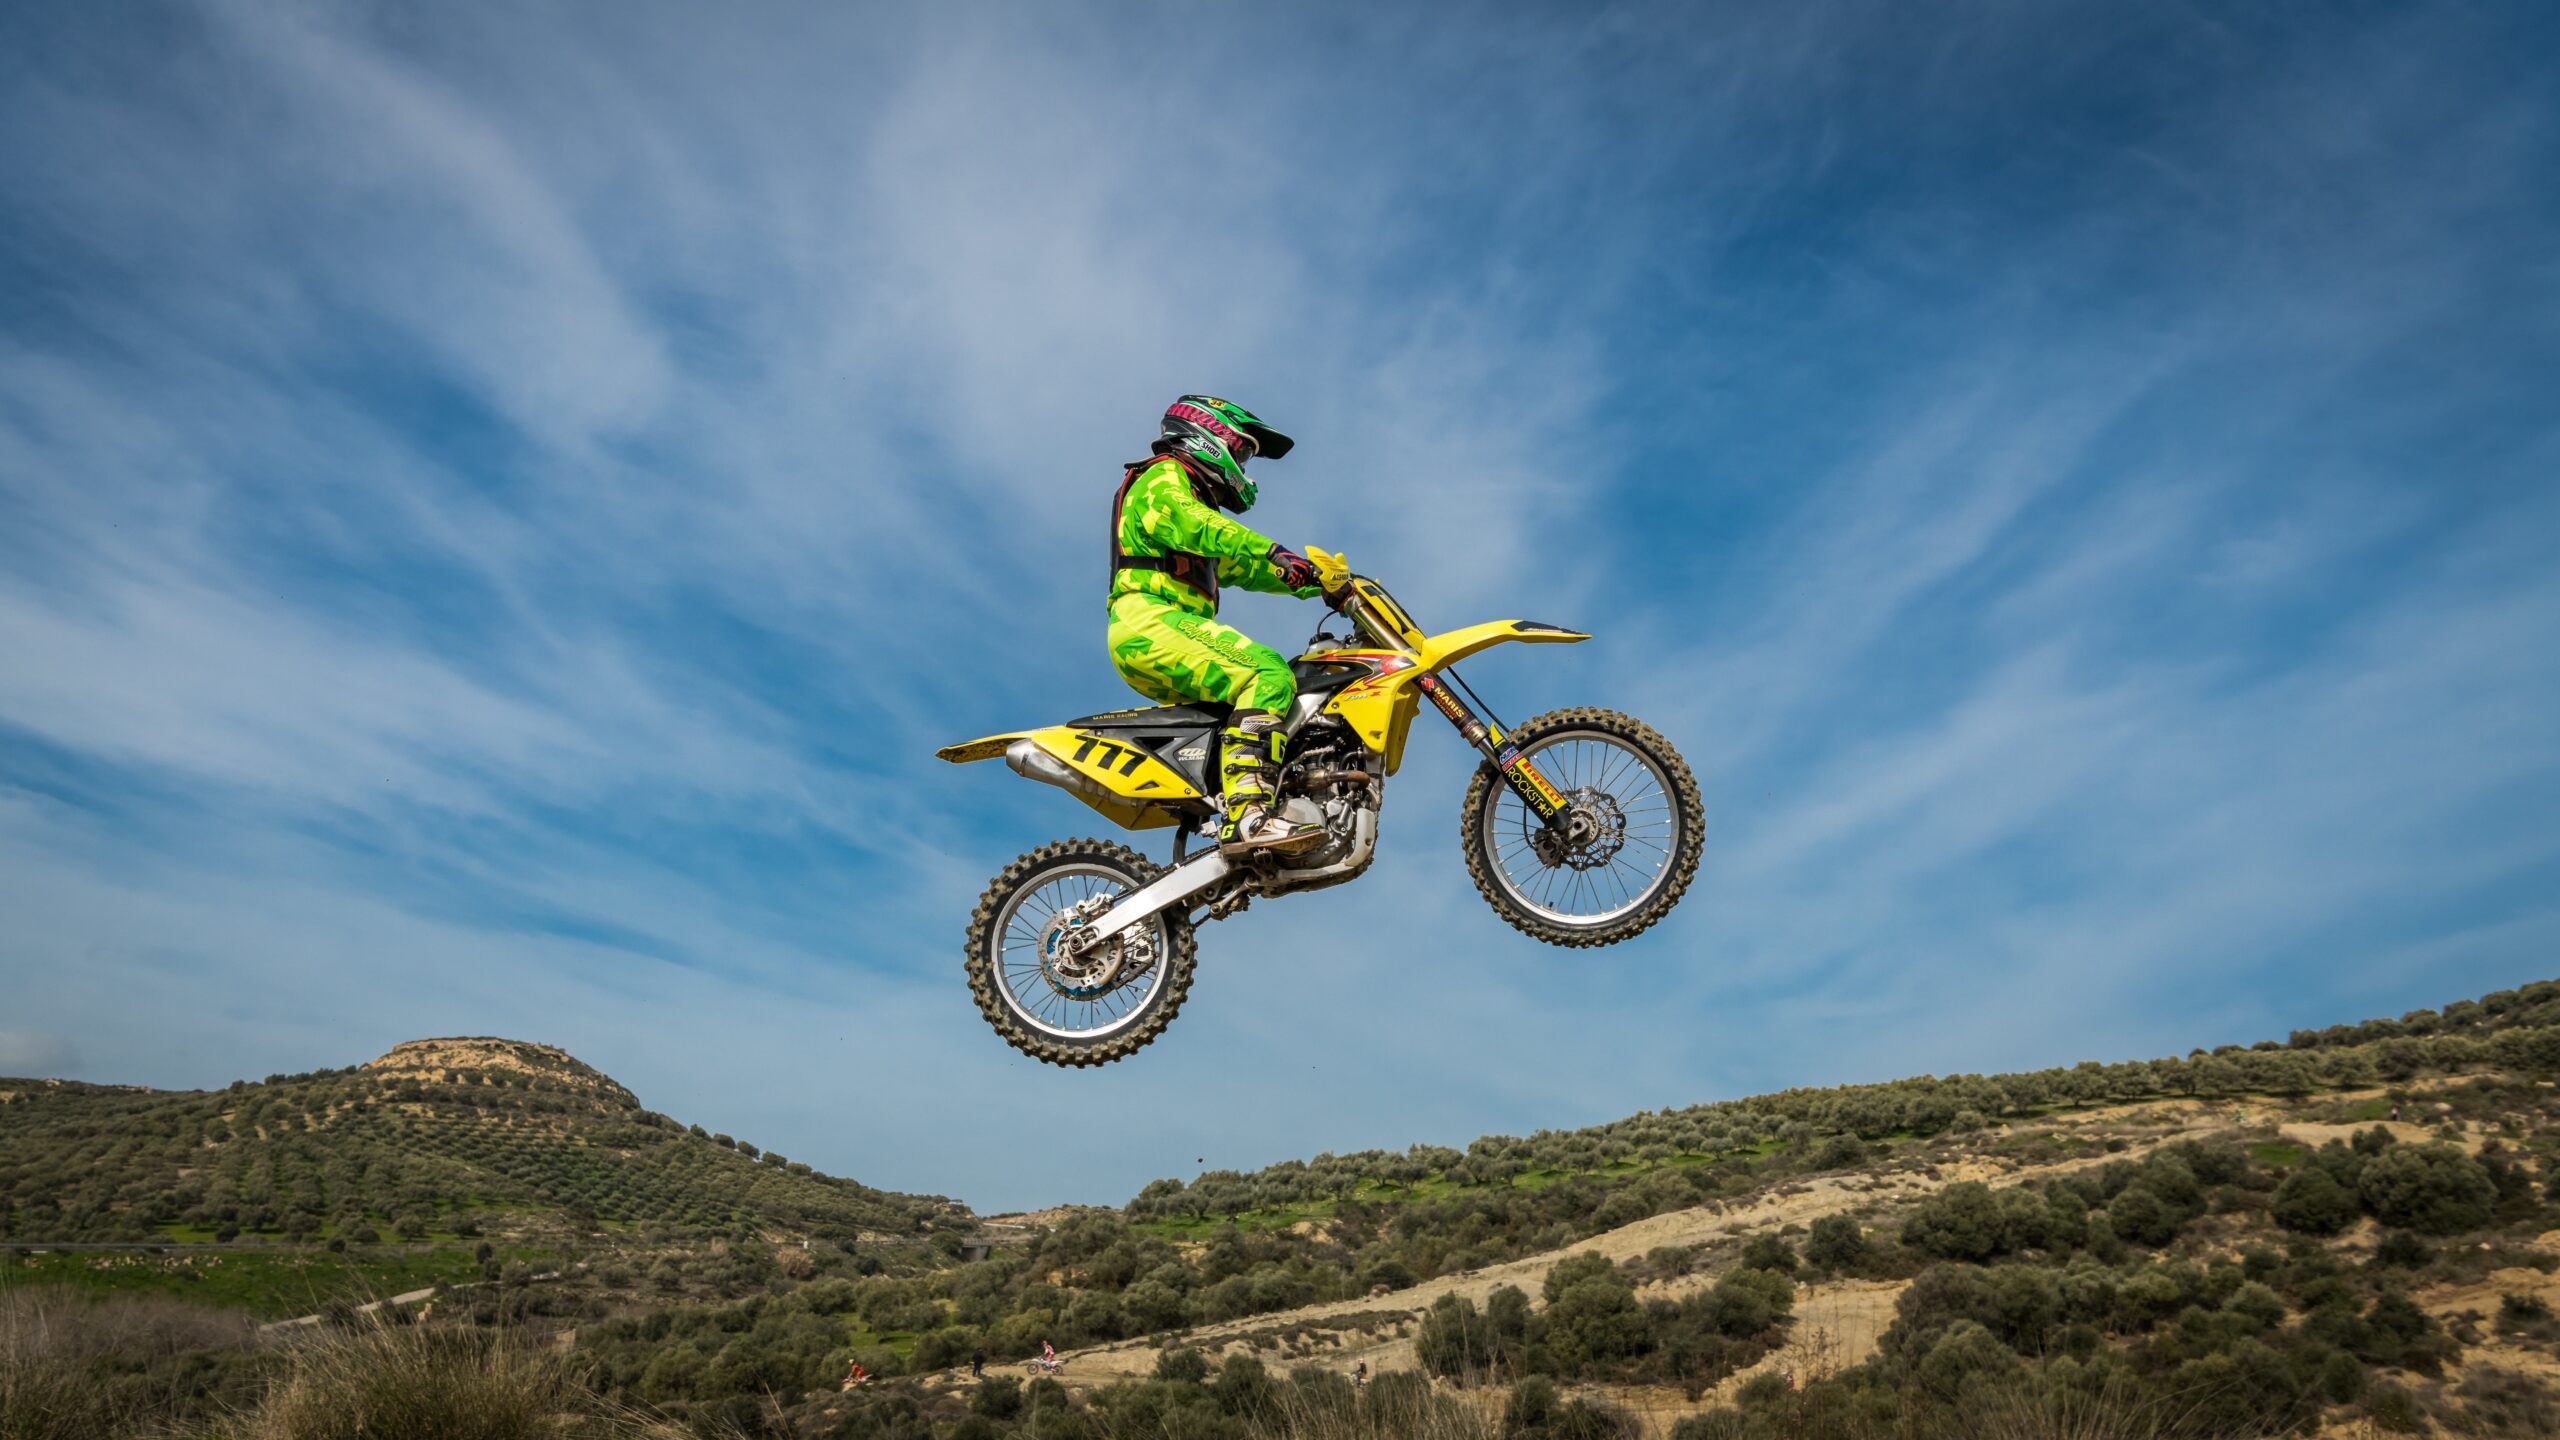 Motocross: Jak wybrać idealny motocykl i maksymalnie wykorzystać jego potencjał?